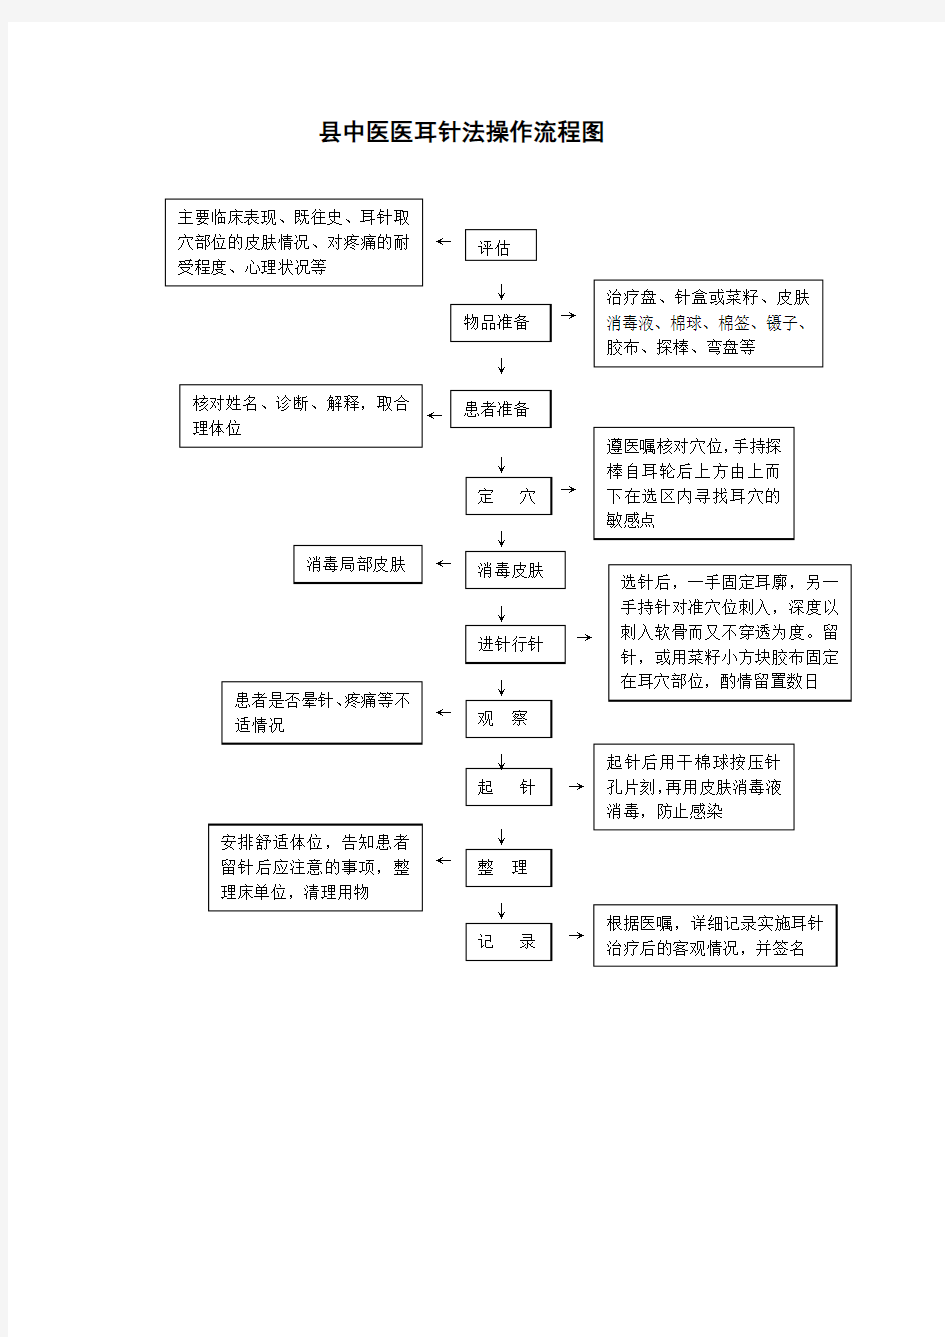 县中医医耳针法操作流程图